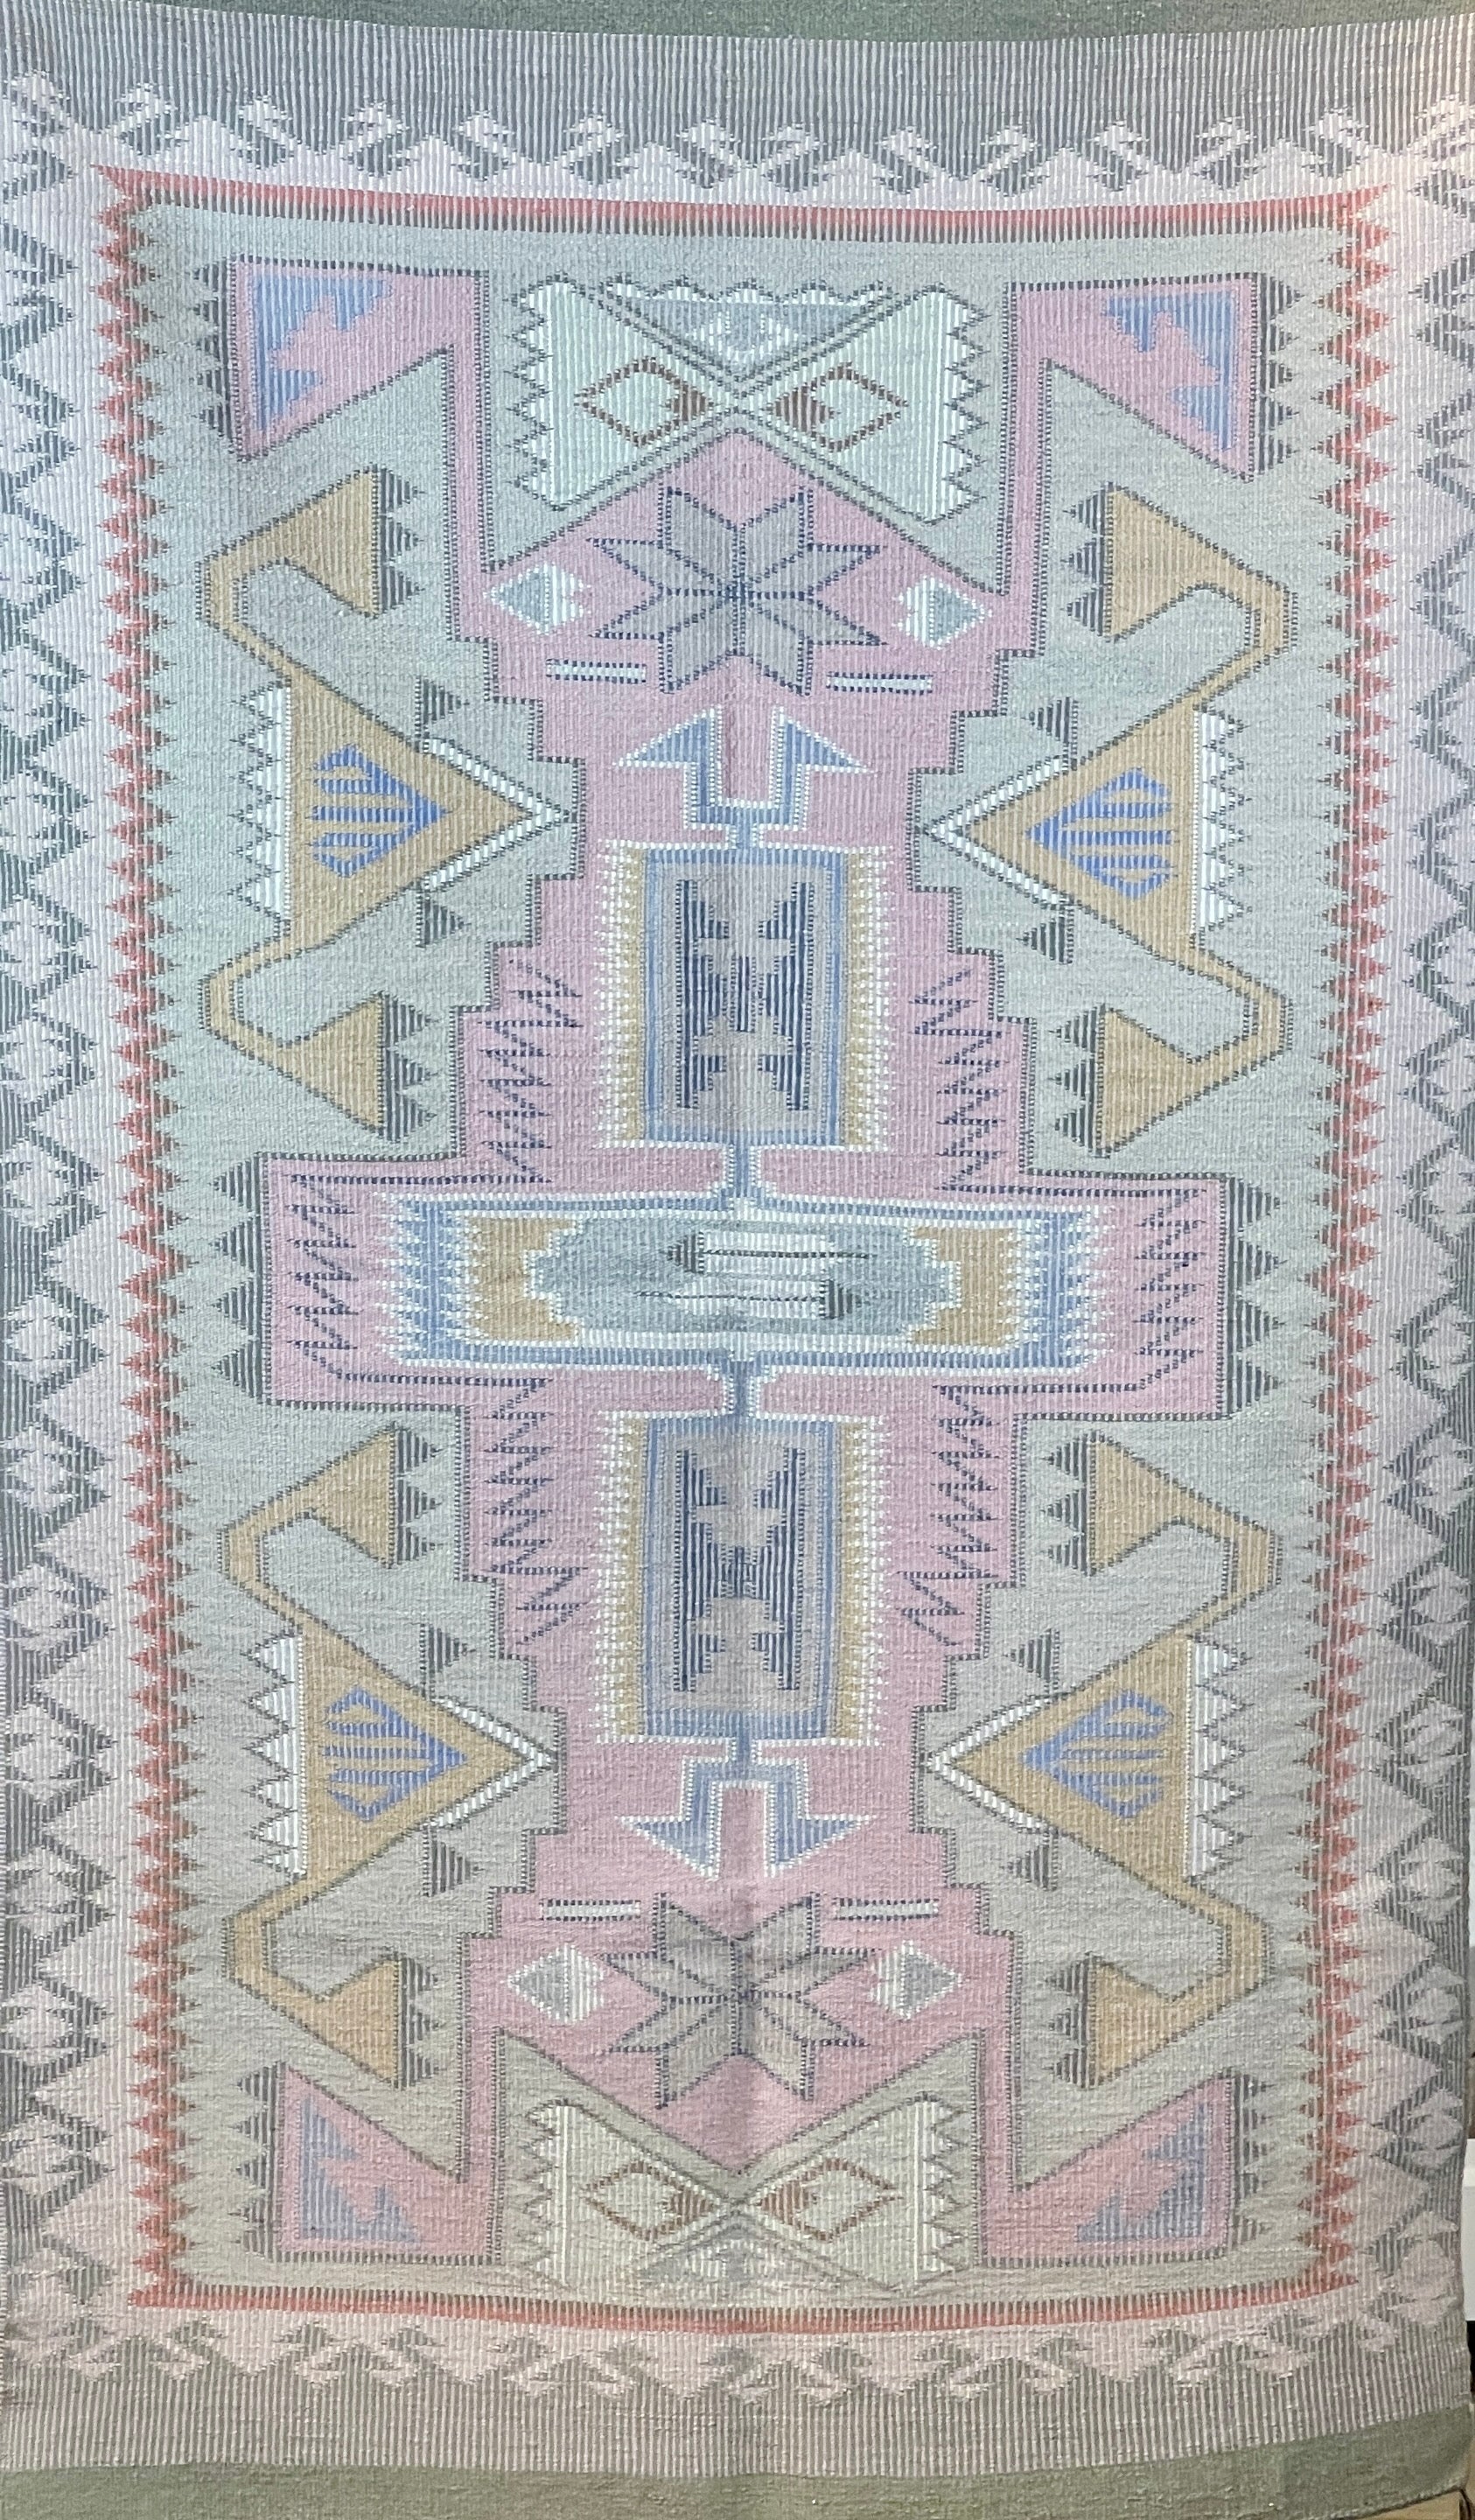 Raised Outline Weaving by Louise Shepherd-Weaving-Navajo Weaving-Sorrel Sky Gallery